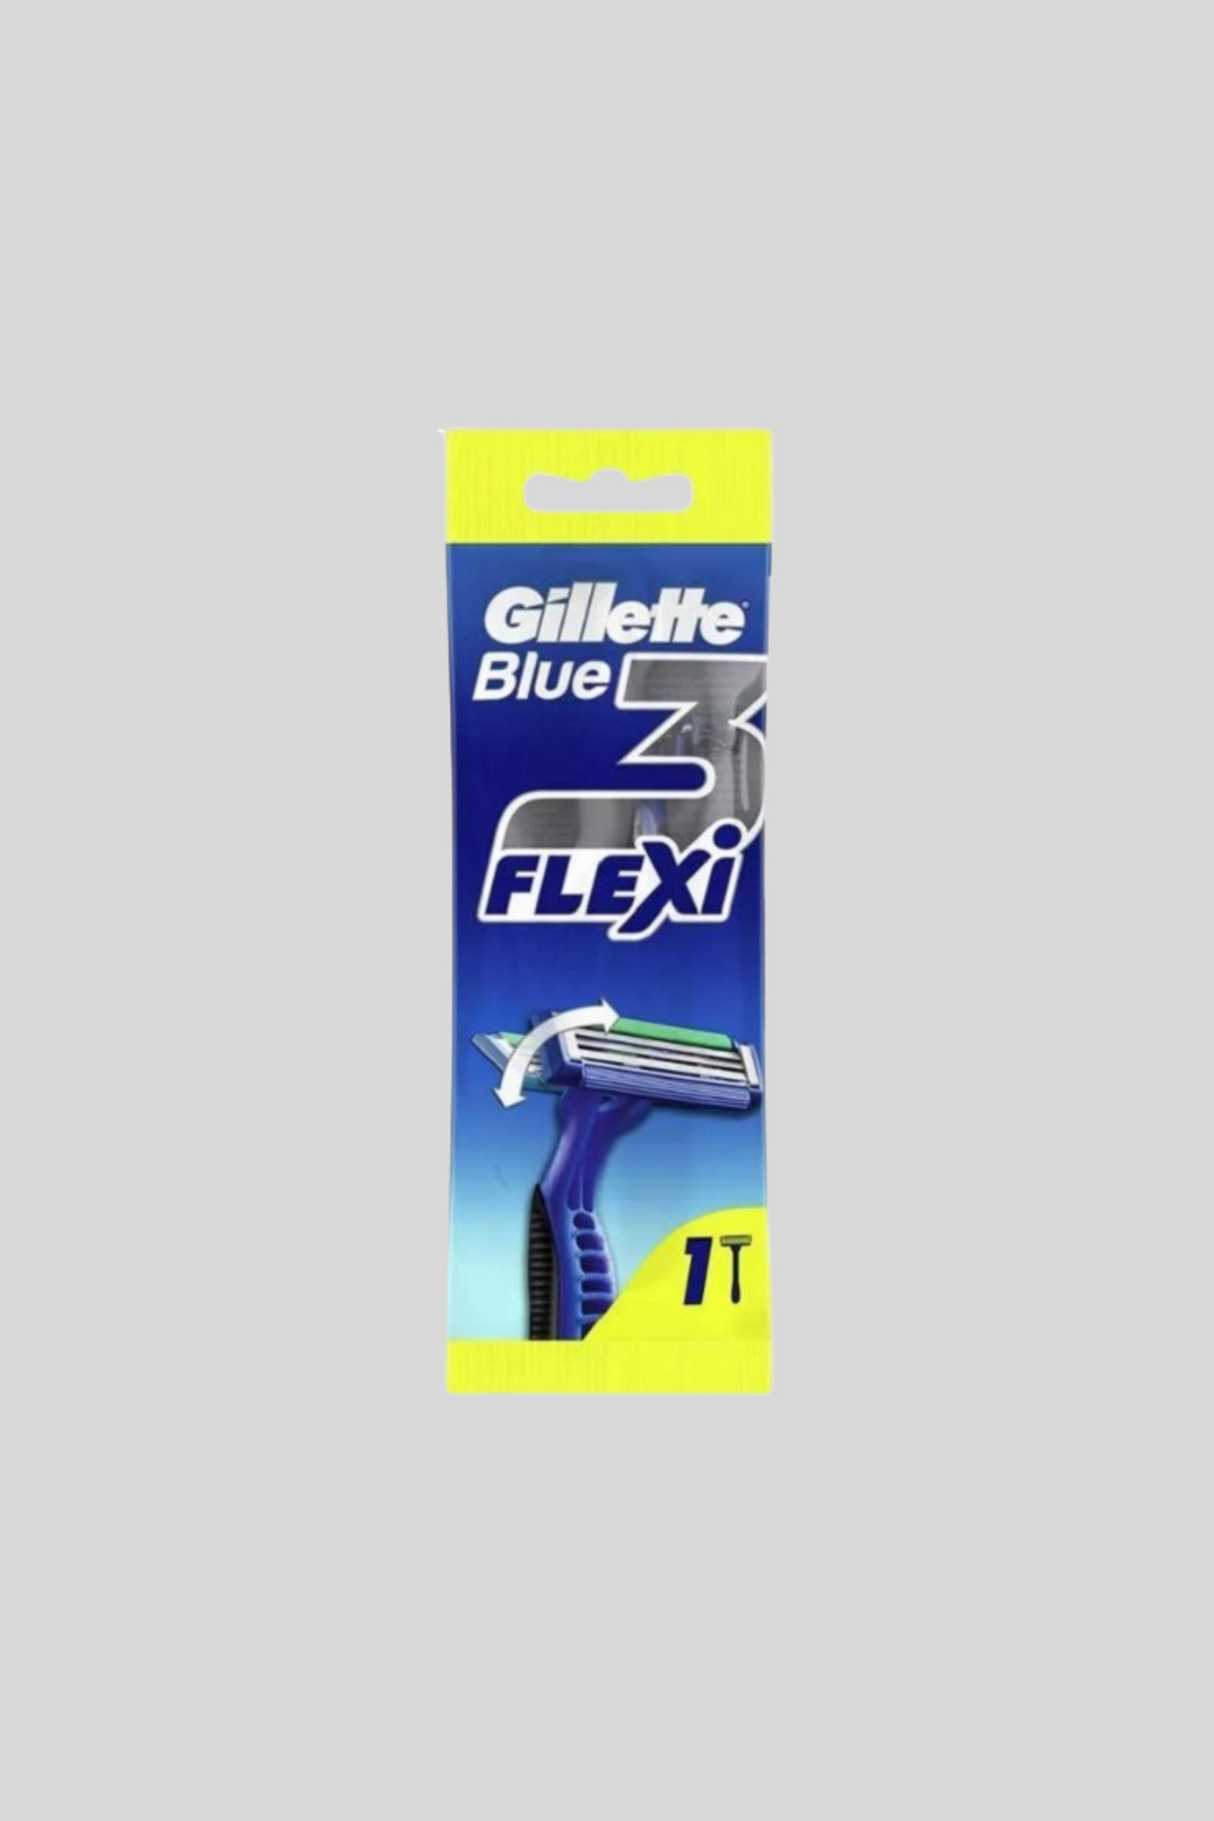 gillette razor blue 3 flexi 1p